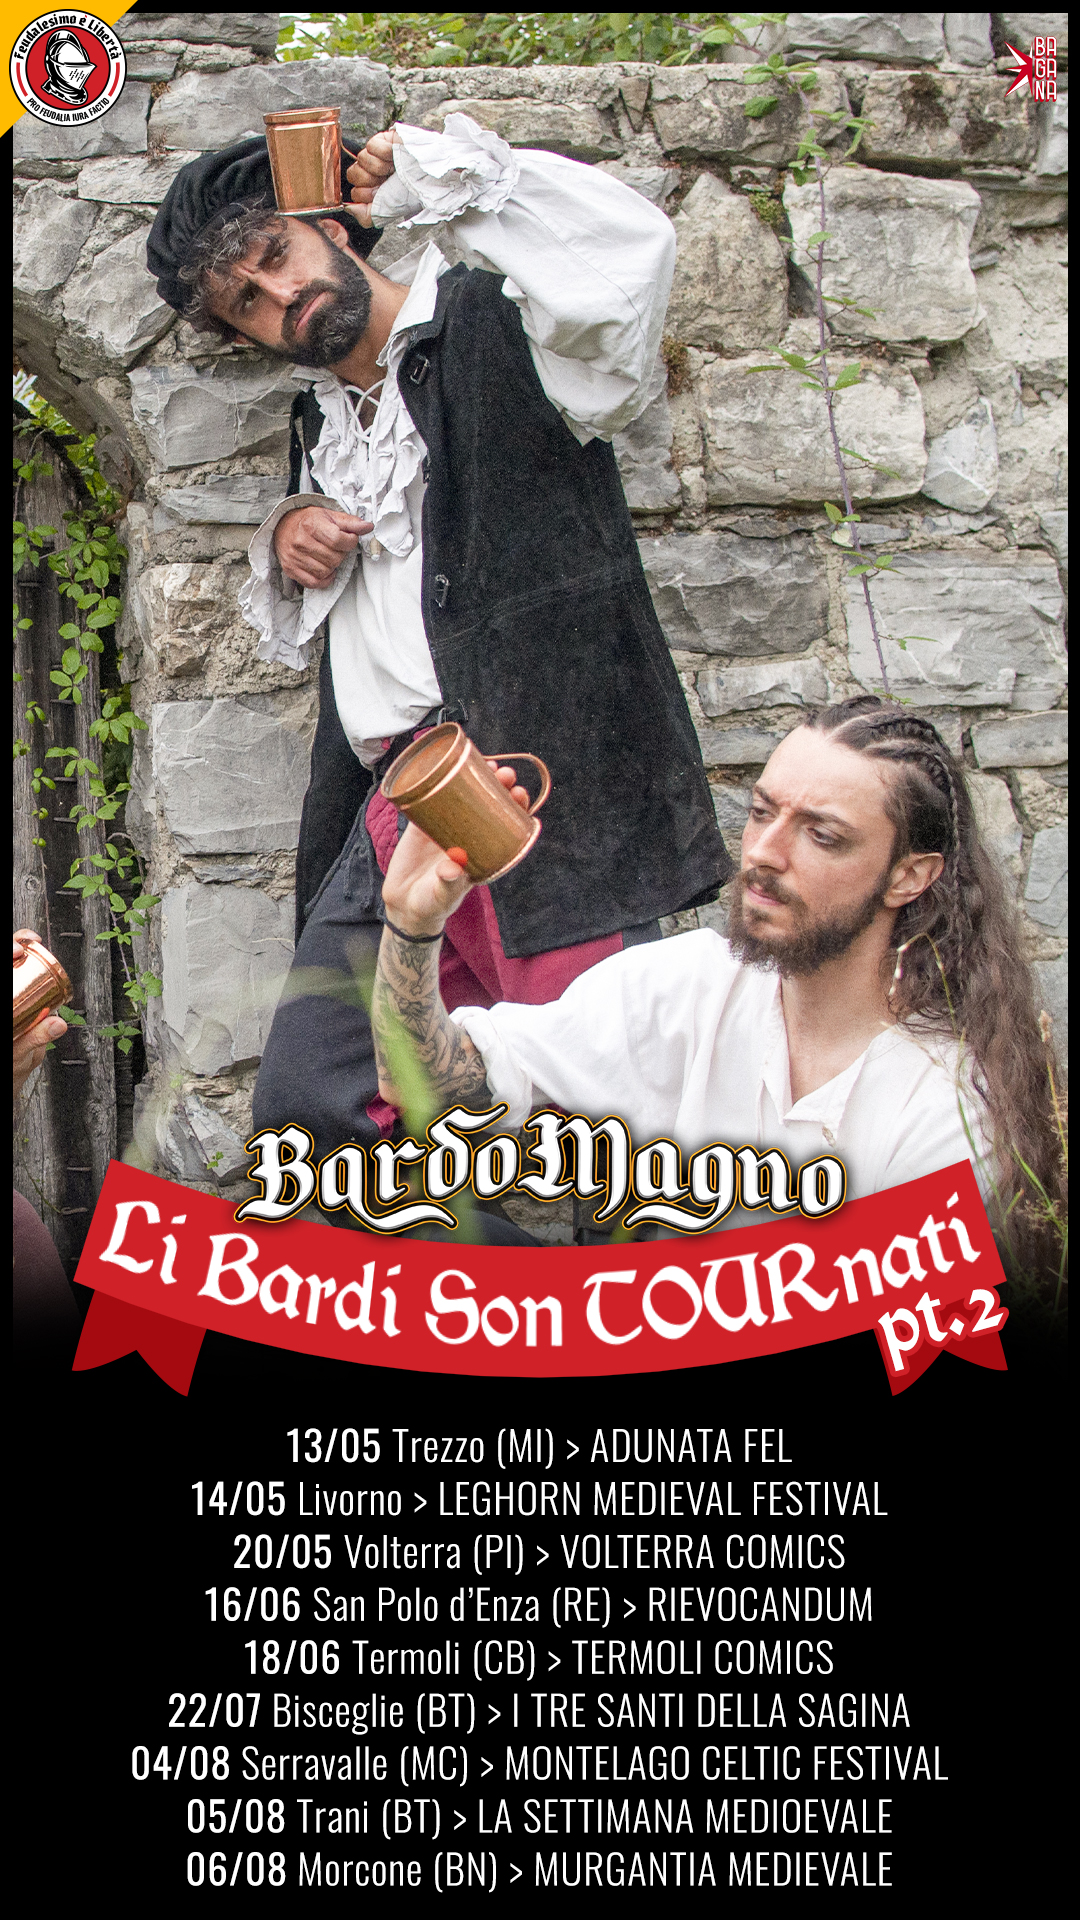 BARDOMAGNO “Li Bardi Son TOURnati” Parte 2: Annunciati i concerti estivi della folk rock band di Feudalesimo e Libertà